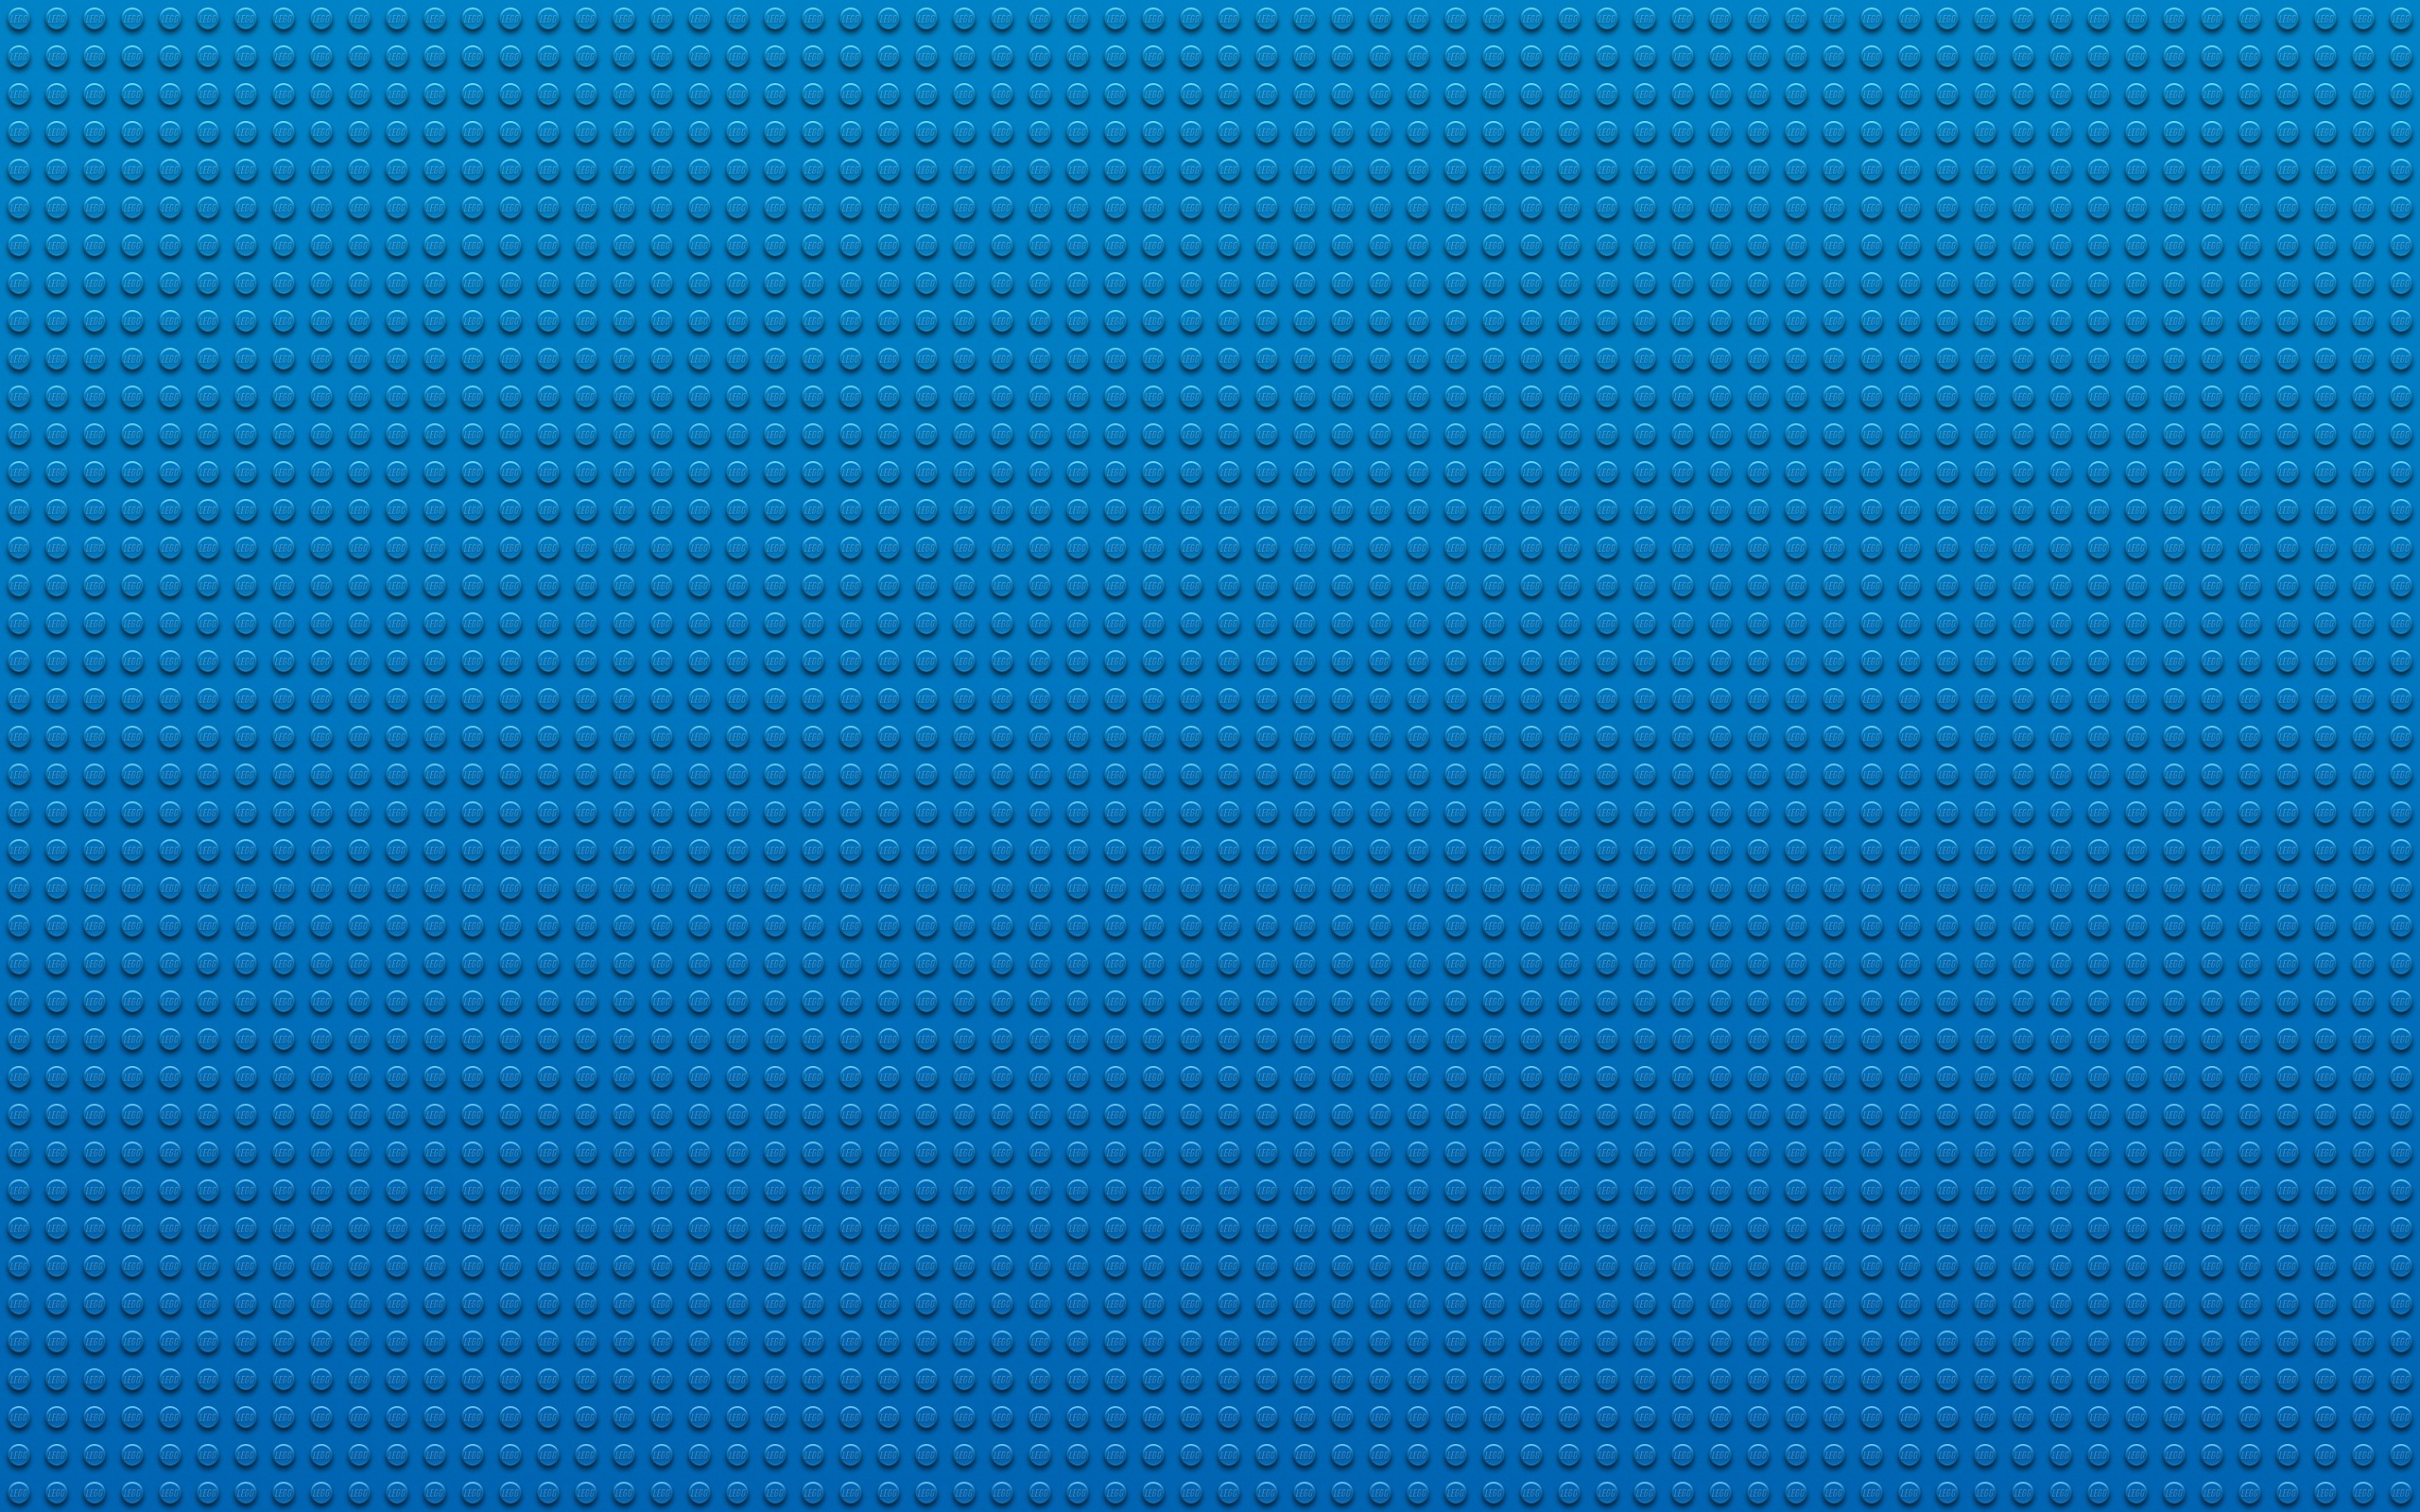 Lego Blue Wallpaper Textures Dots